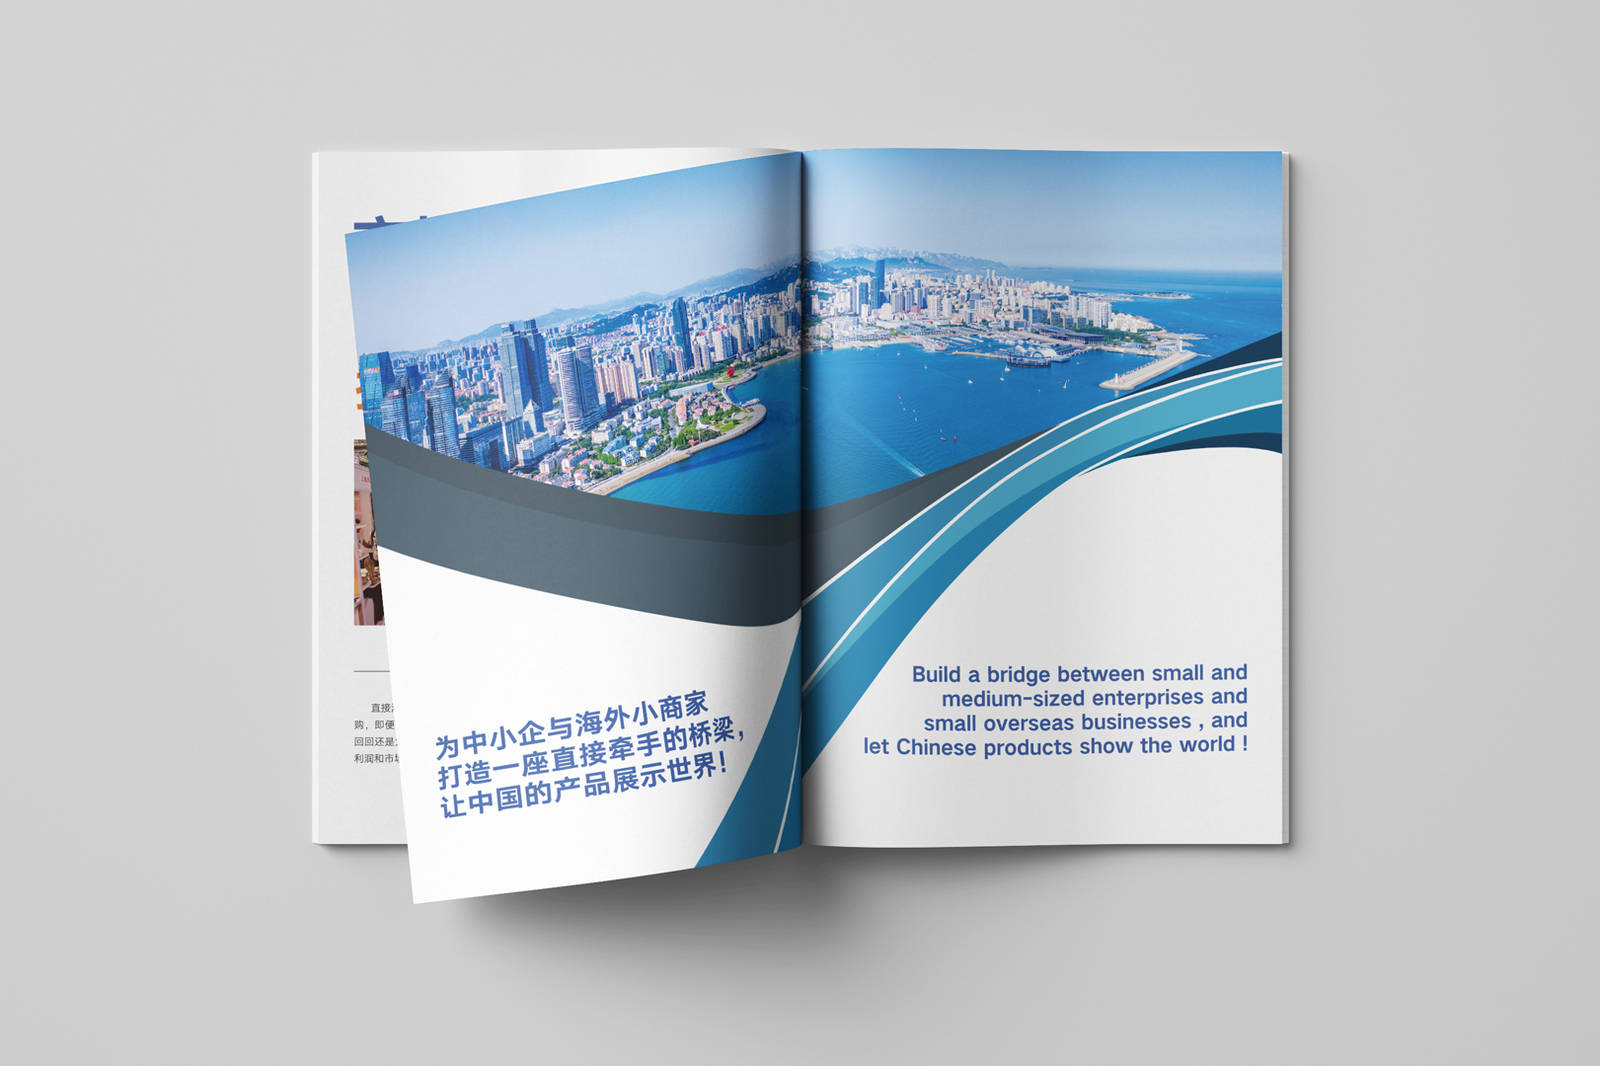 新世展企业国际商贸宣传画册-第6张